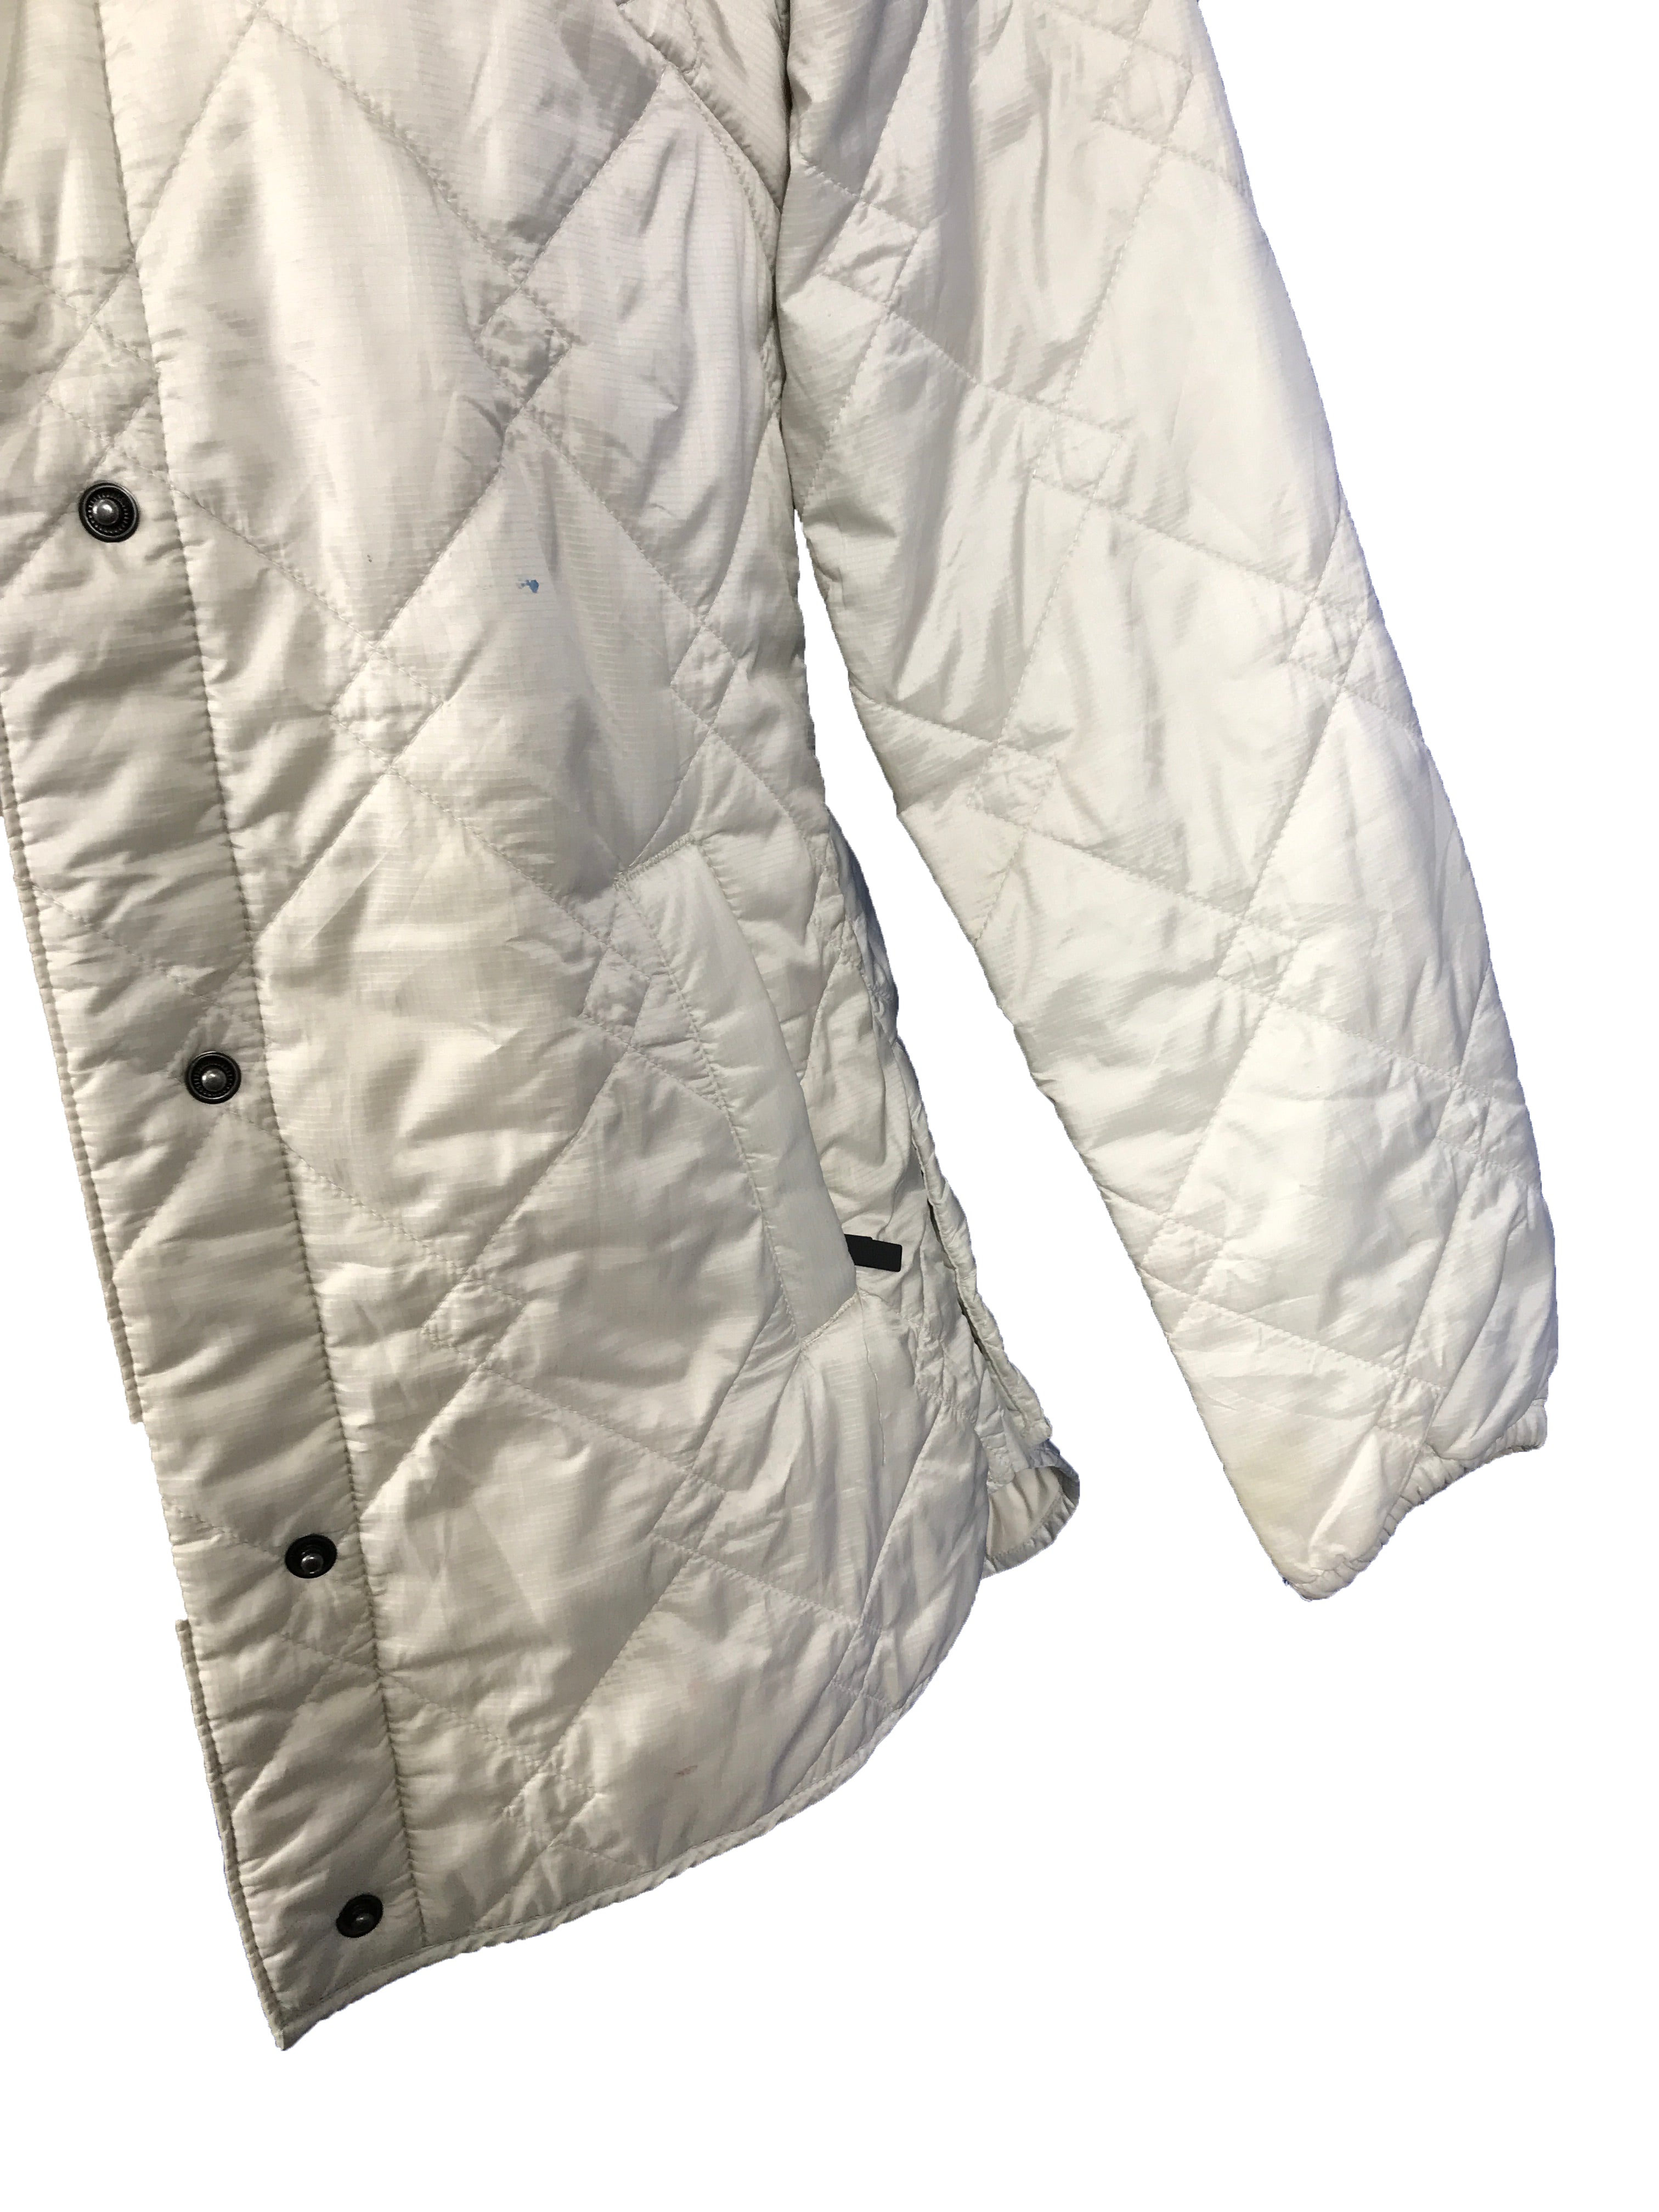 Columbia White Jacket Men's Size XS